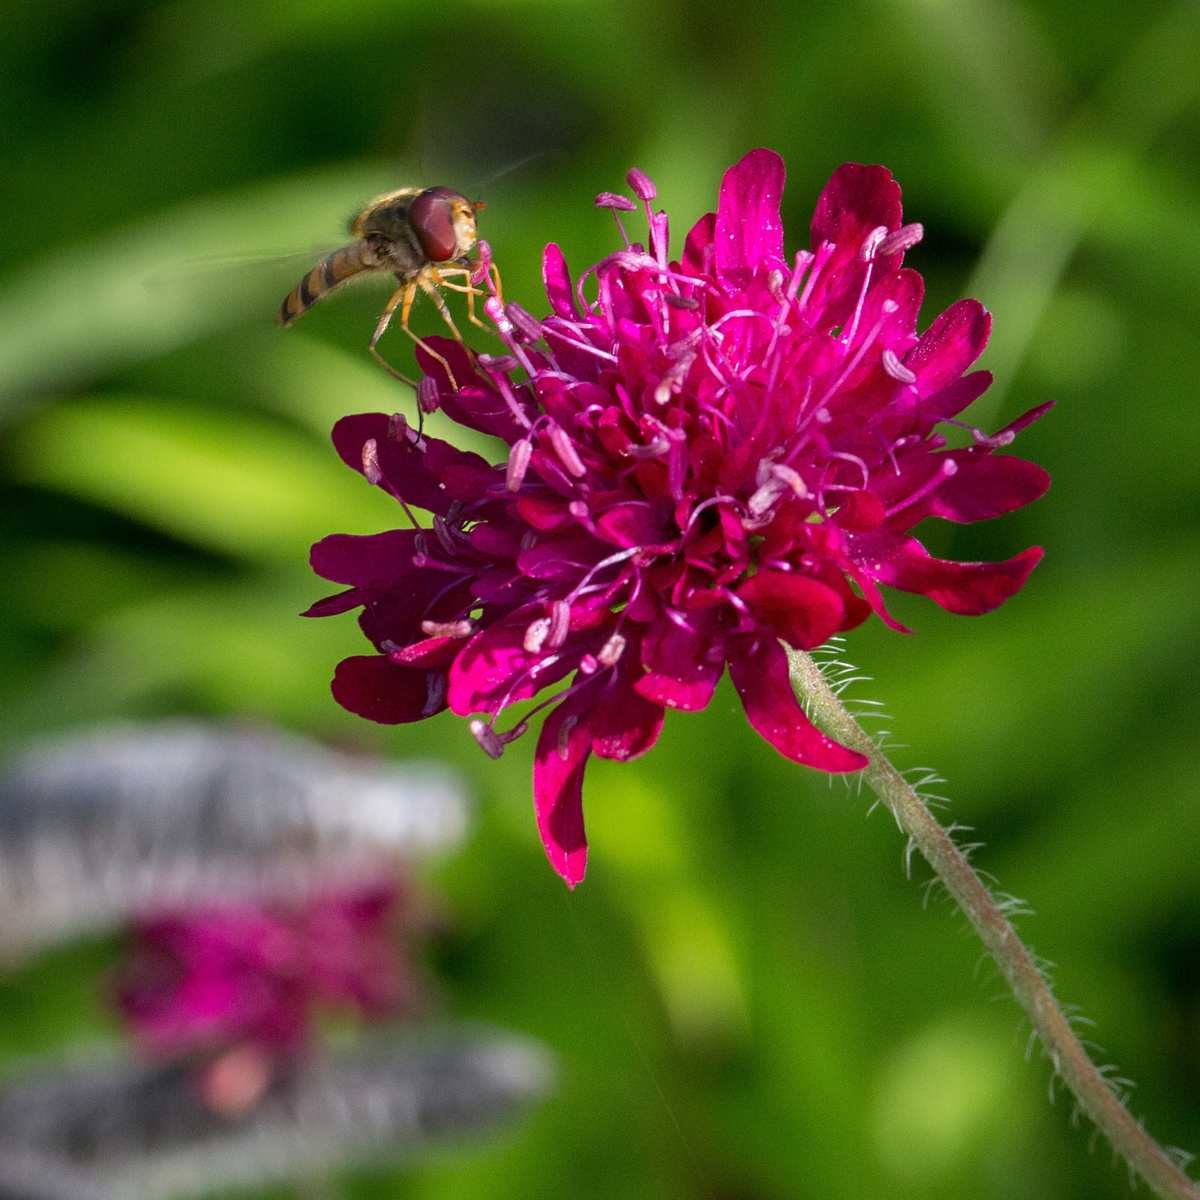 Die Witwenblume (Knautia) stammt aus dem Balkan und hat ein kräftiges Purpur als Blütenfarbe